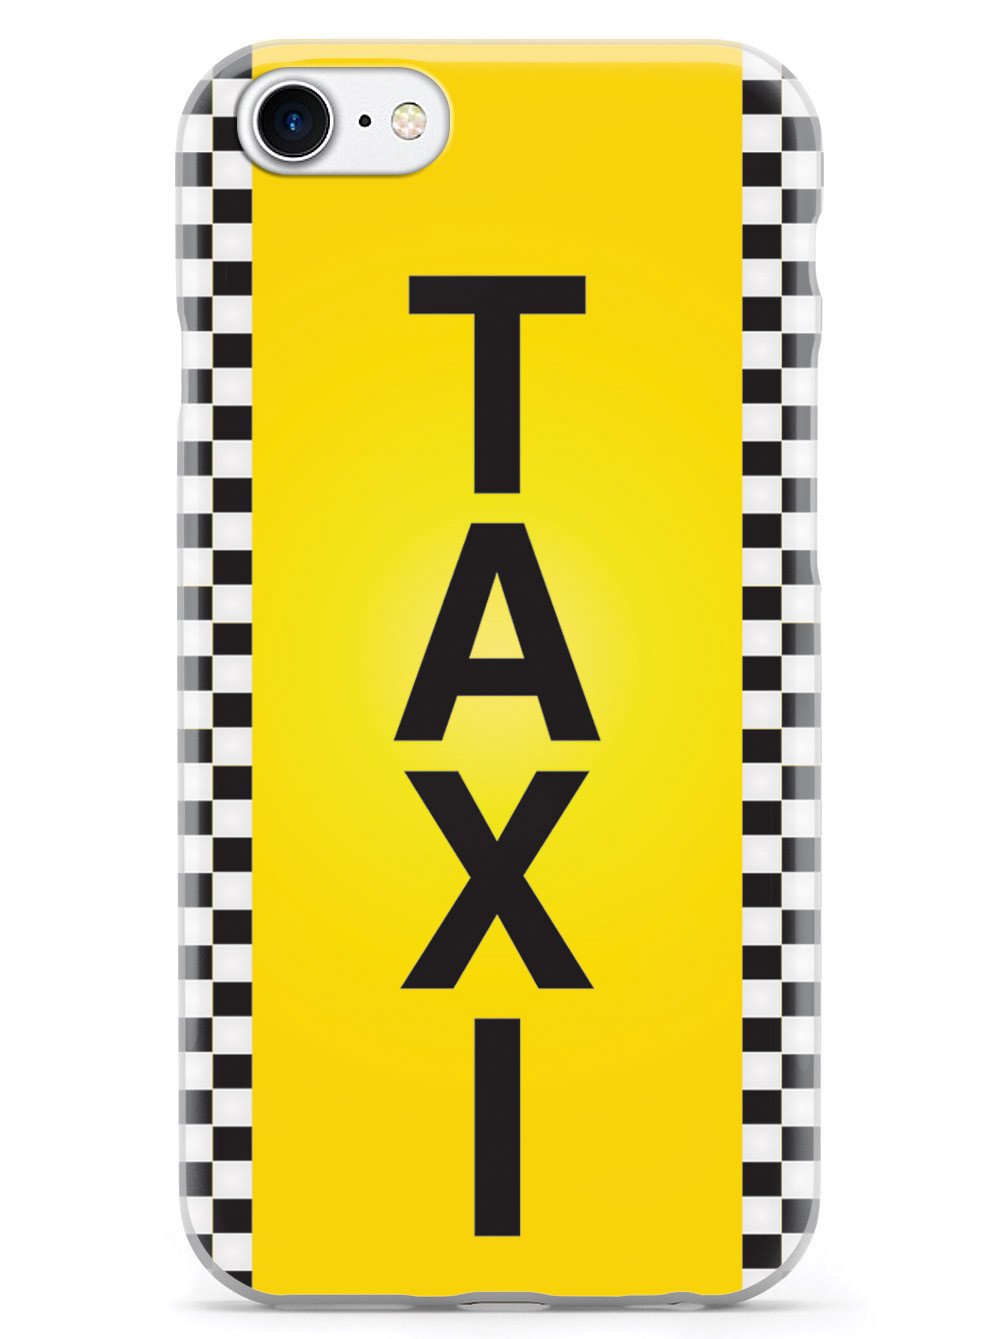 Taxi Cab Case